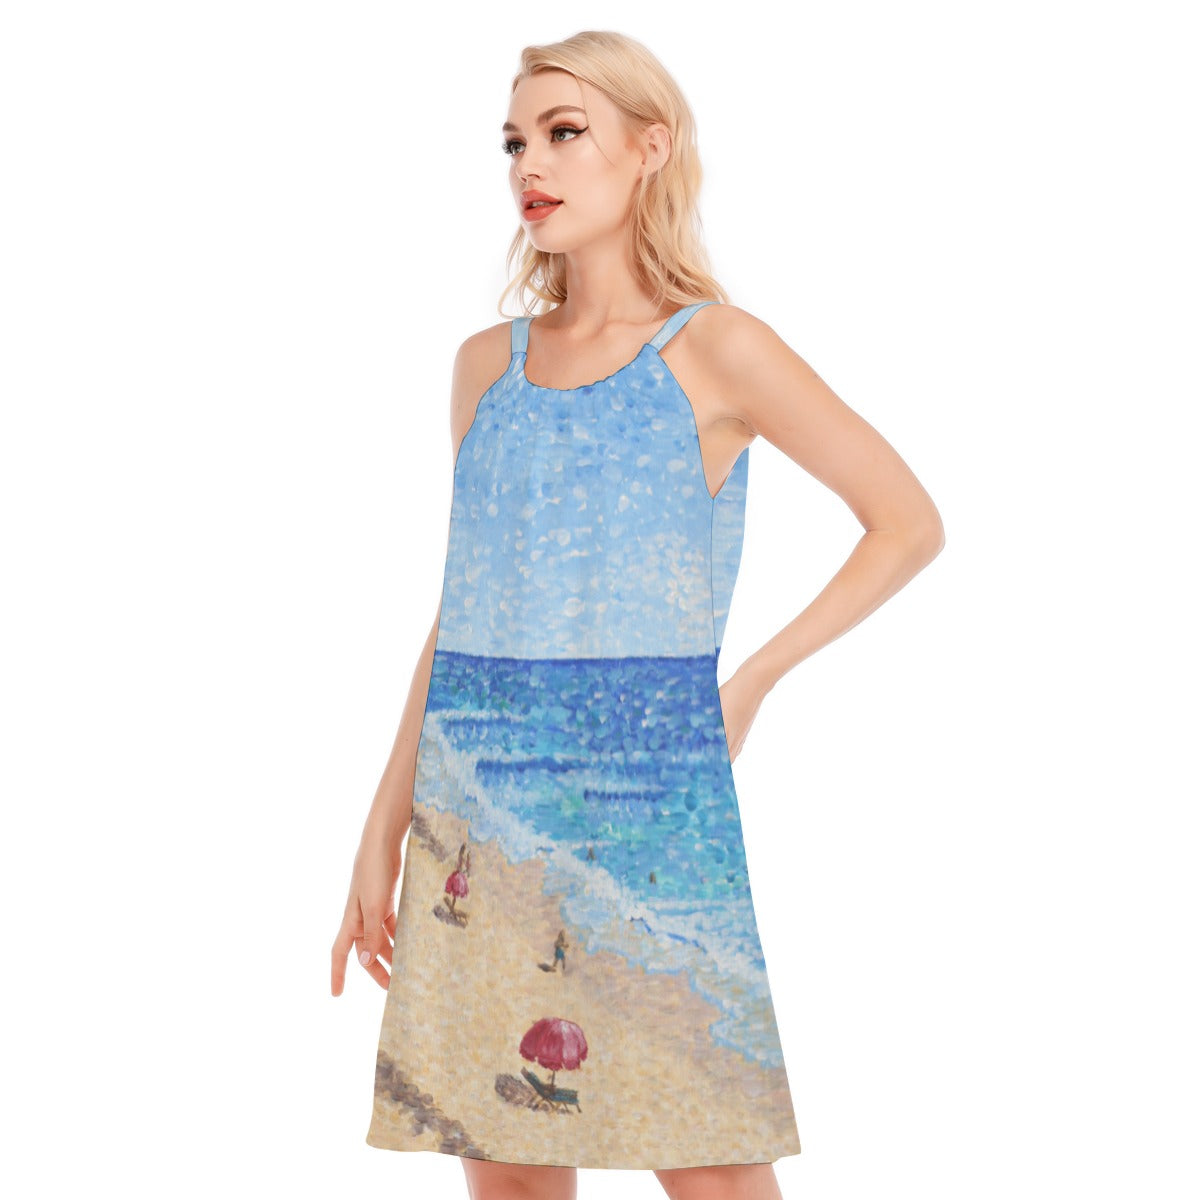 Women's Summer Days Resort Dress / Vacation Dress / Beach Dress